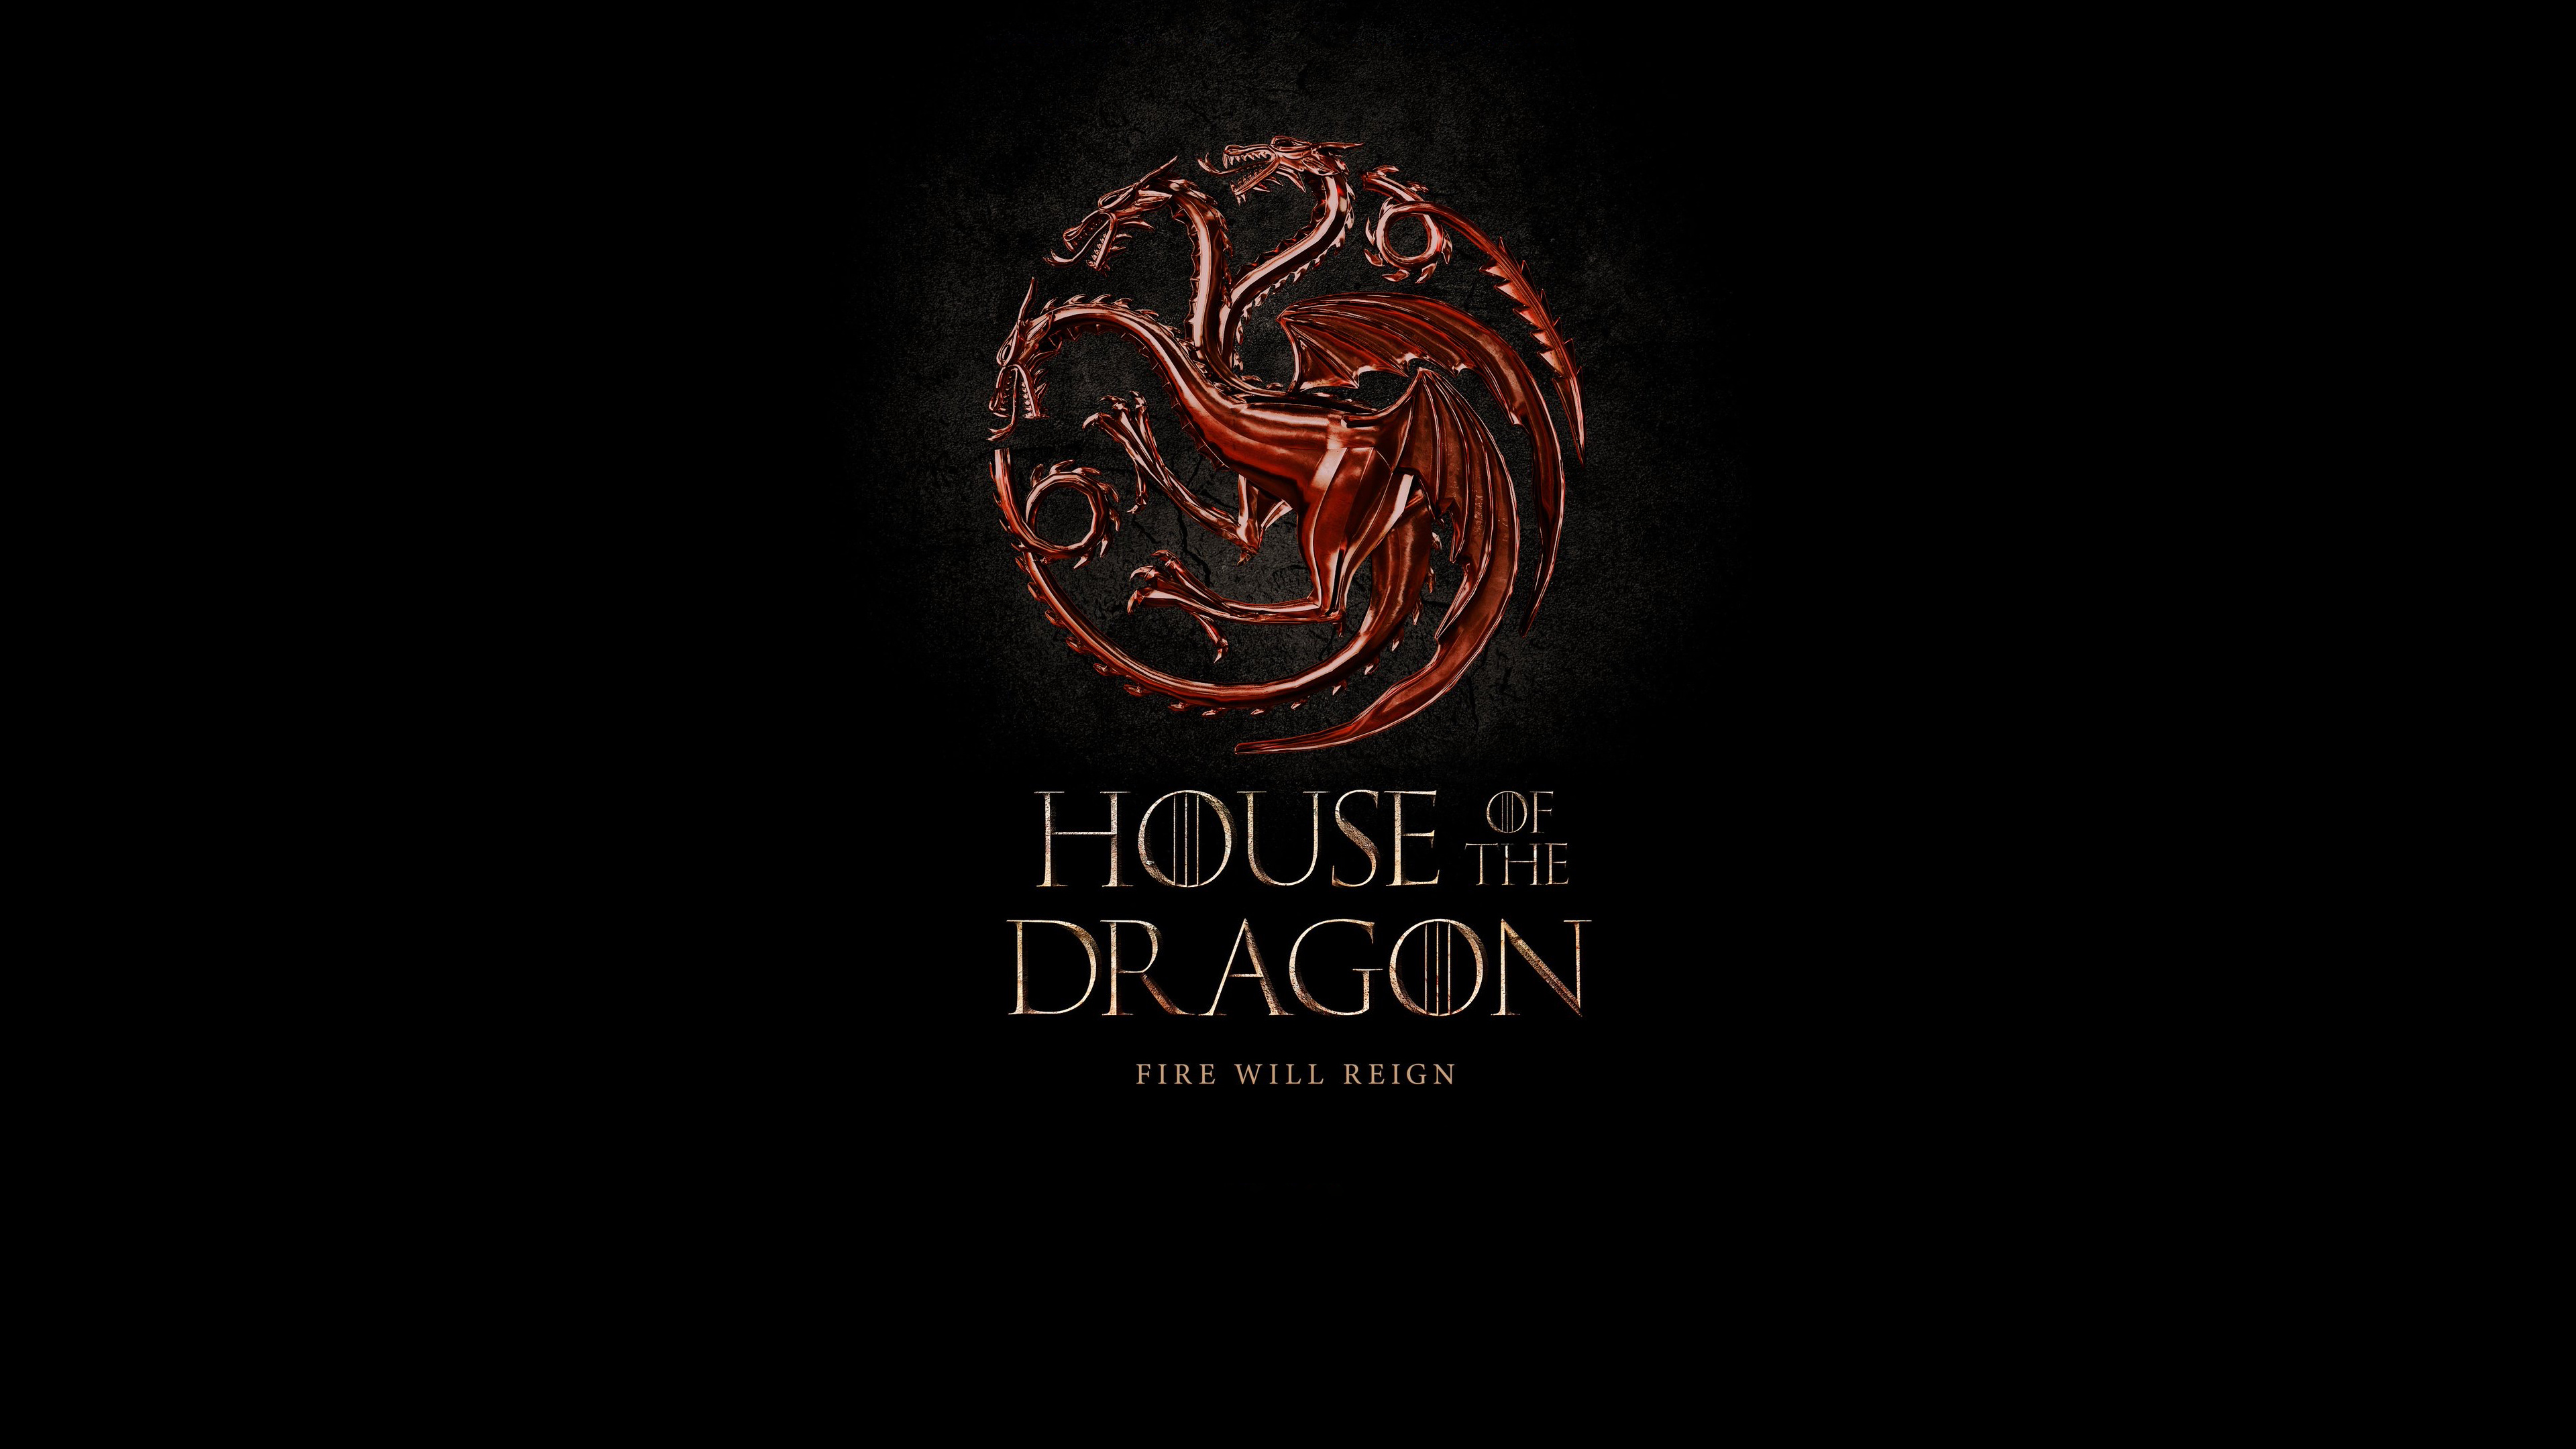 House Targaryen, 4K Ultra HD wallpaper, Epic visuals, Dragon sigil, 3840x2160 4K Desktop